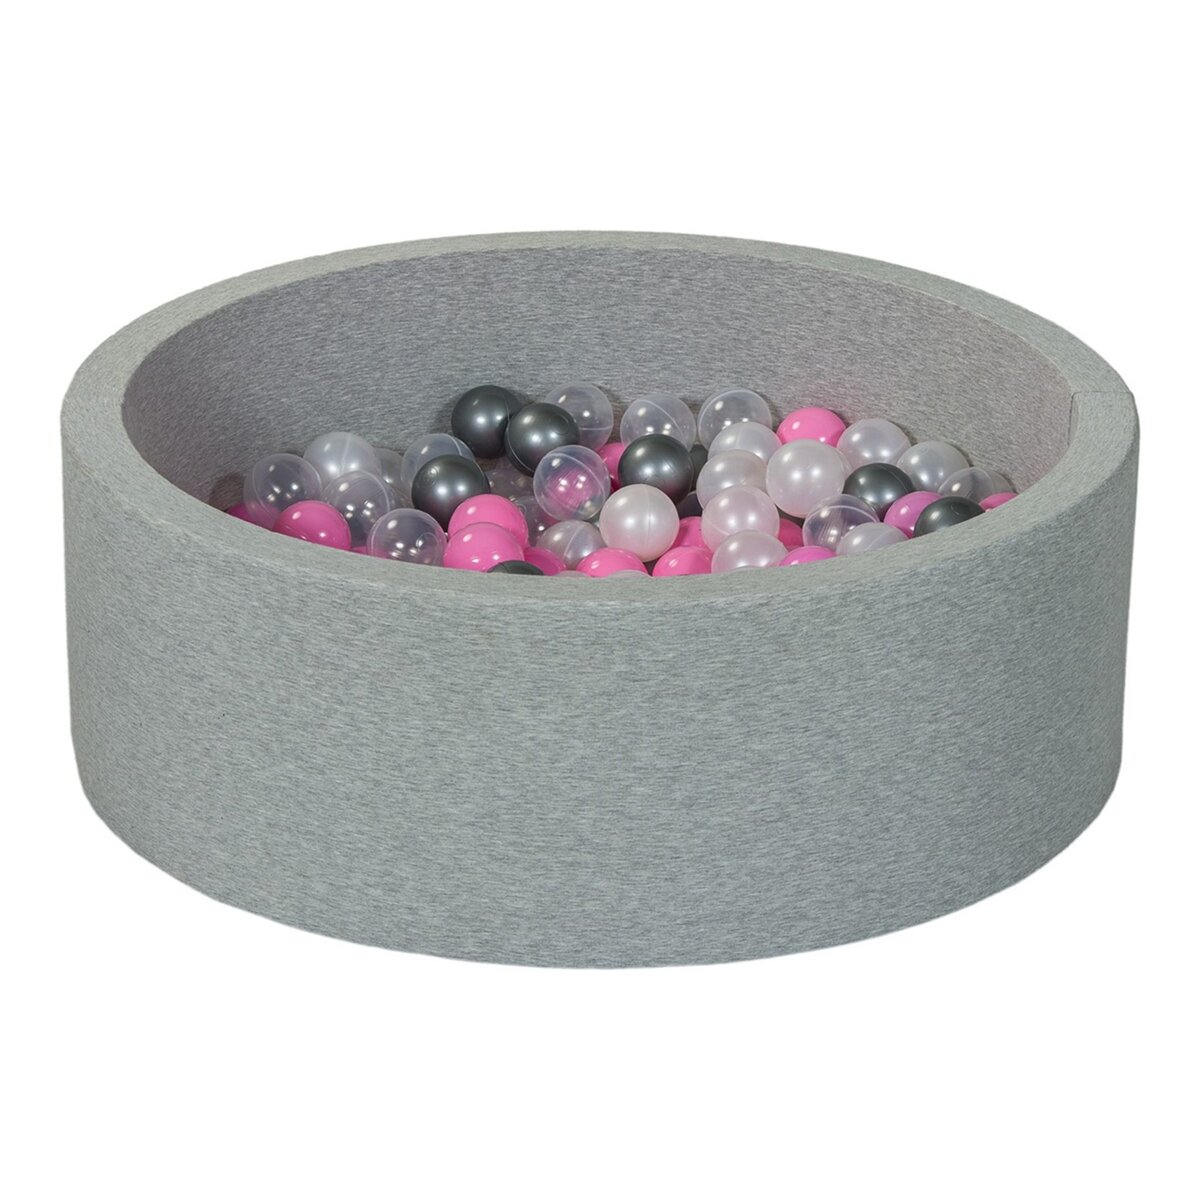  Piscine à balles Aire de jeu + 150 balles perle, transparent, rose clair, argent